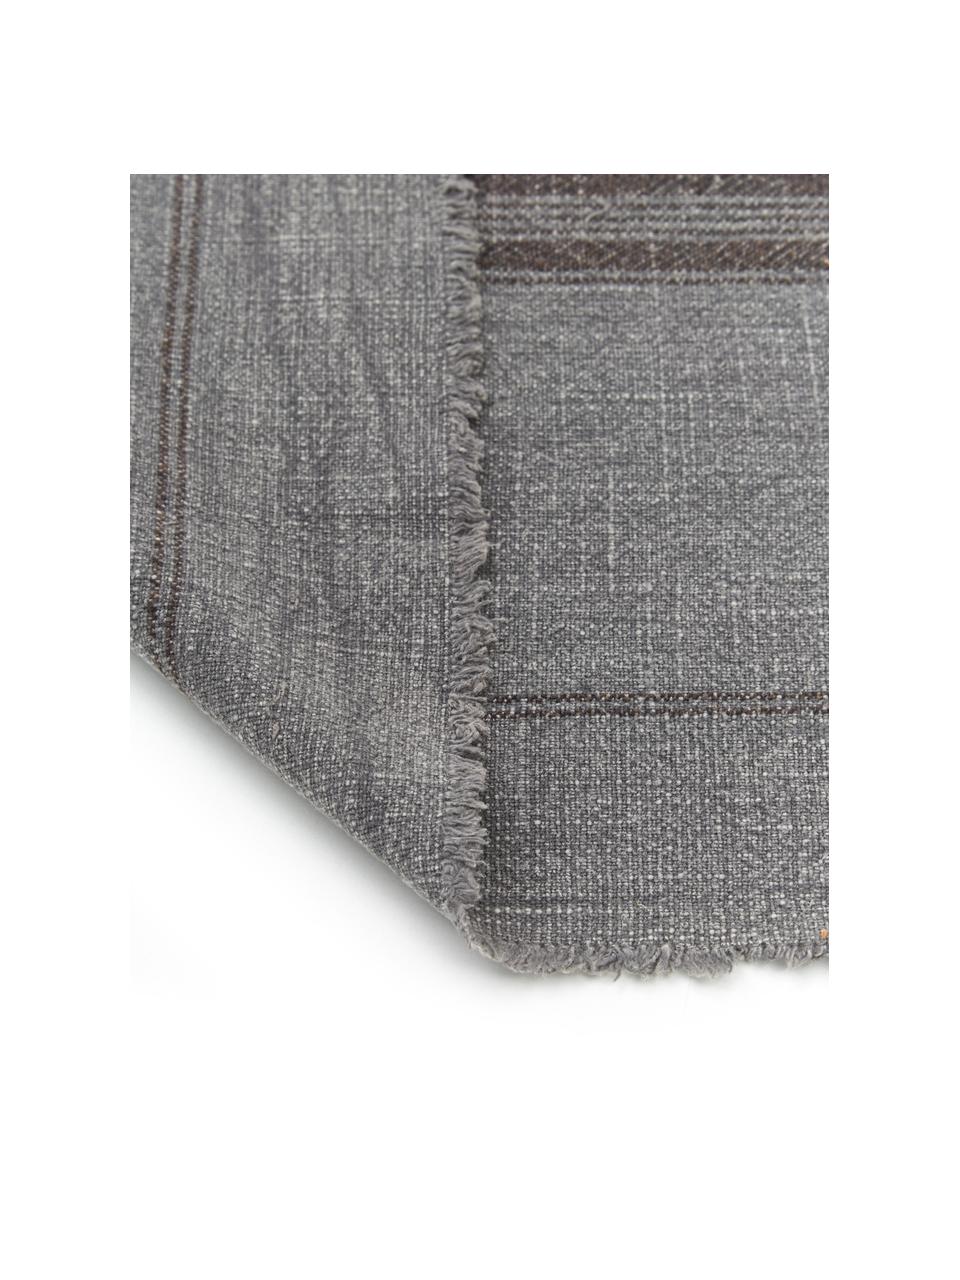 Runner in cotone grigio scuro maculato con frange Ripo, 100% cotone, Grigio scuro, chiazzato, nero, Larg. 40 x Lung. 140 cm